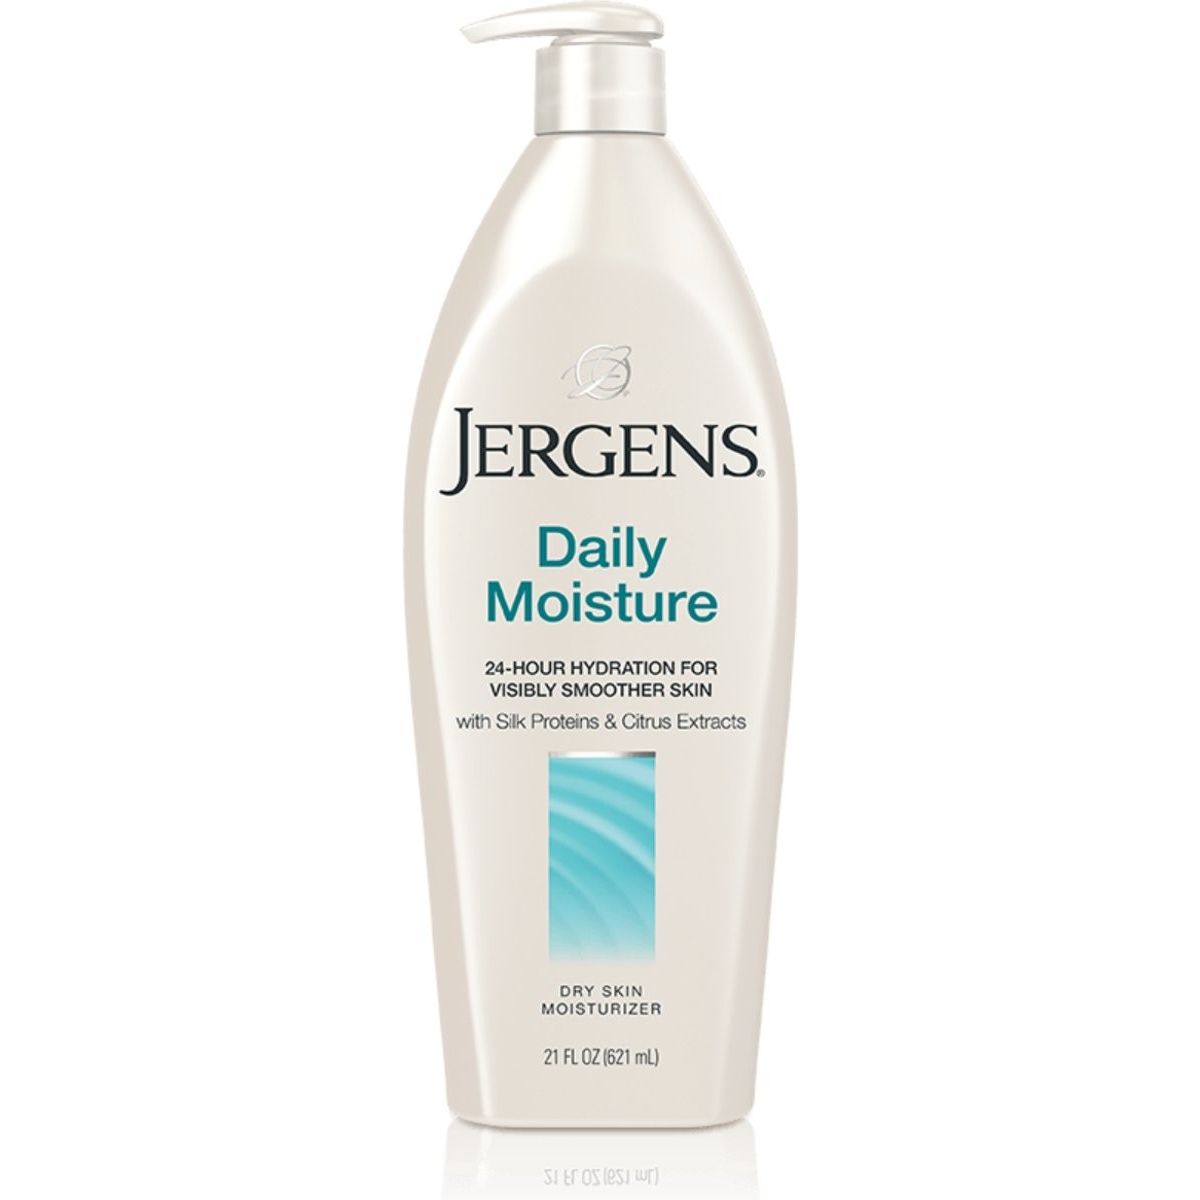 Jergens Daily Moisture Dry Skin Moisturizer 21oz/621ml